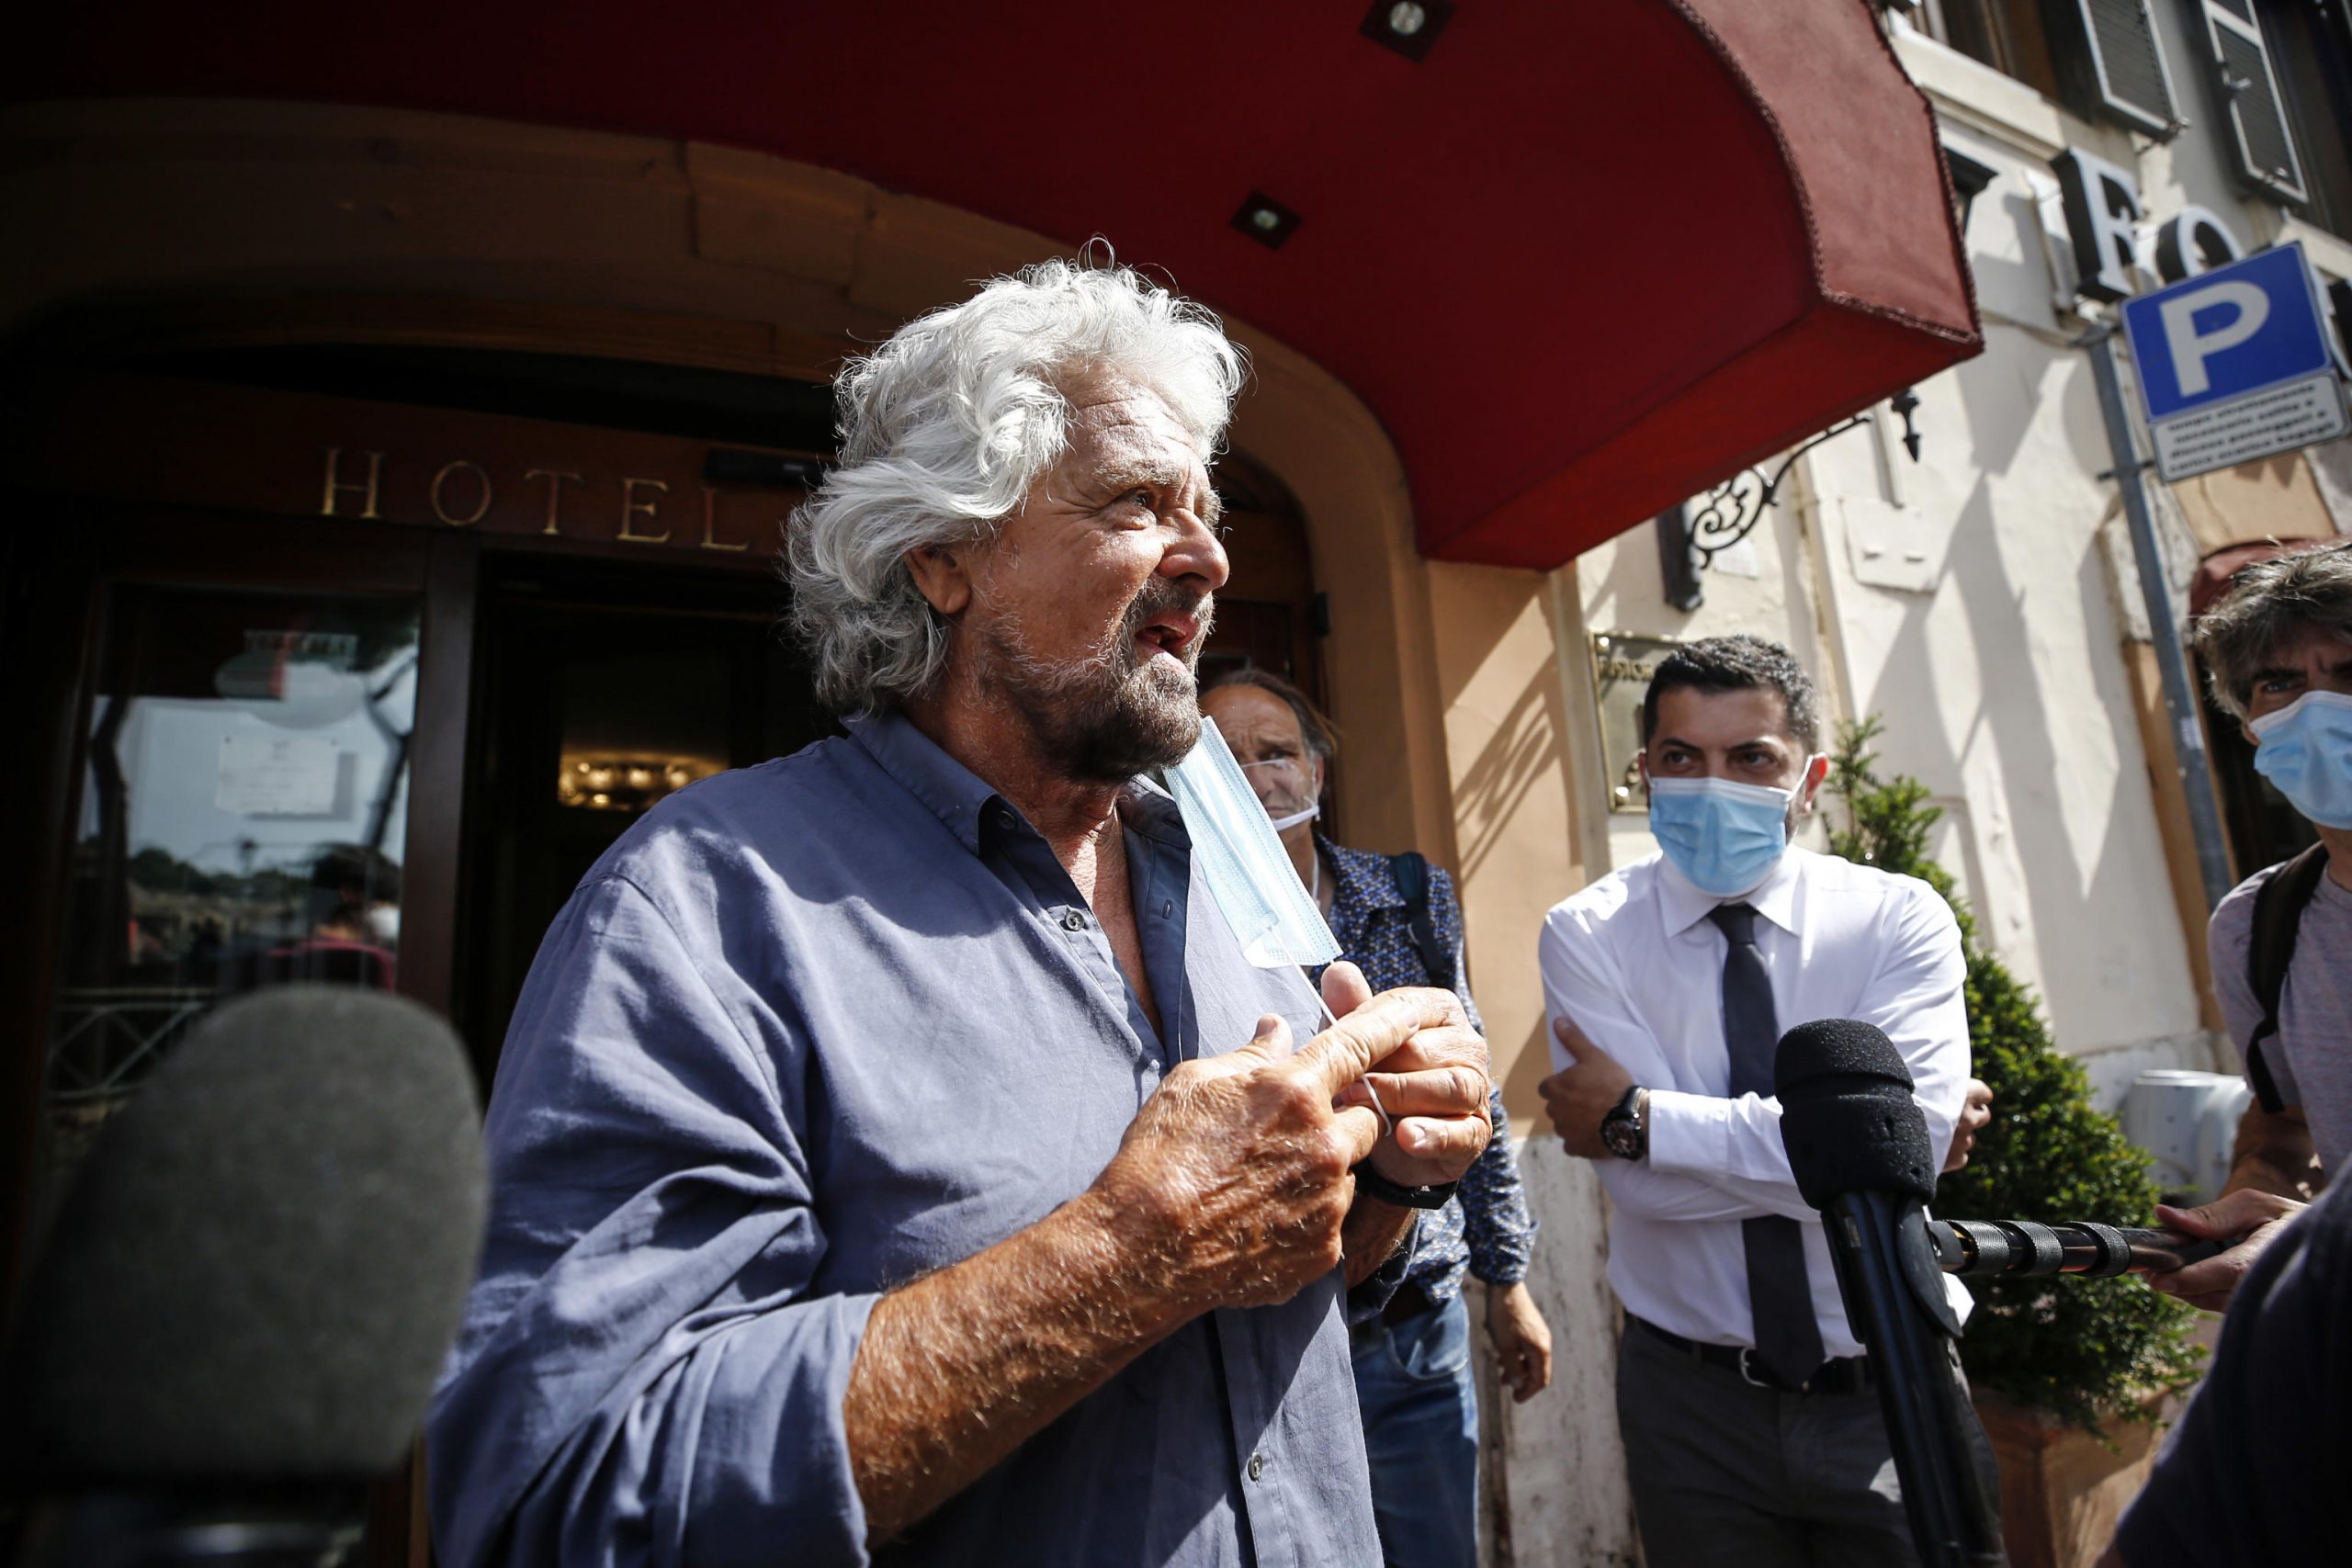 L'Italia dei working poor, Beppe Grillo indagato per traffico di influenze illecite e le altre notizie della giornata